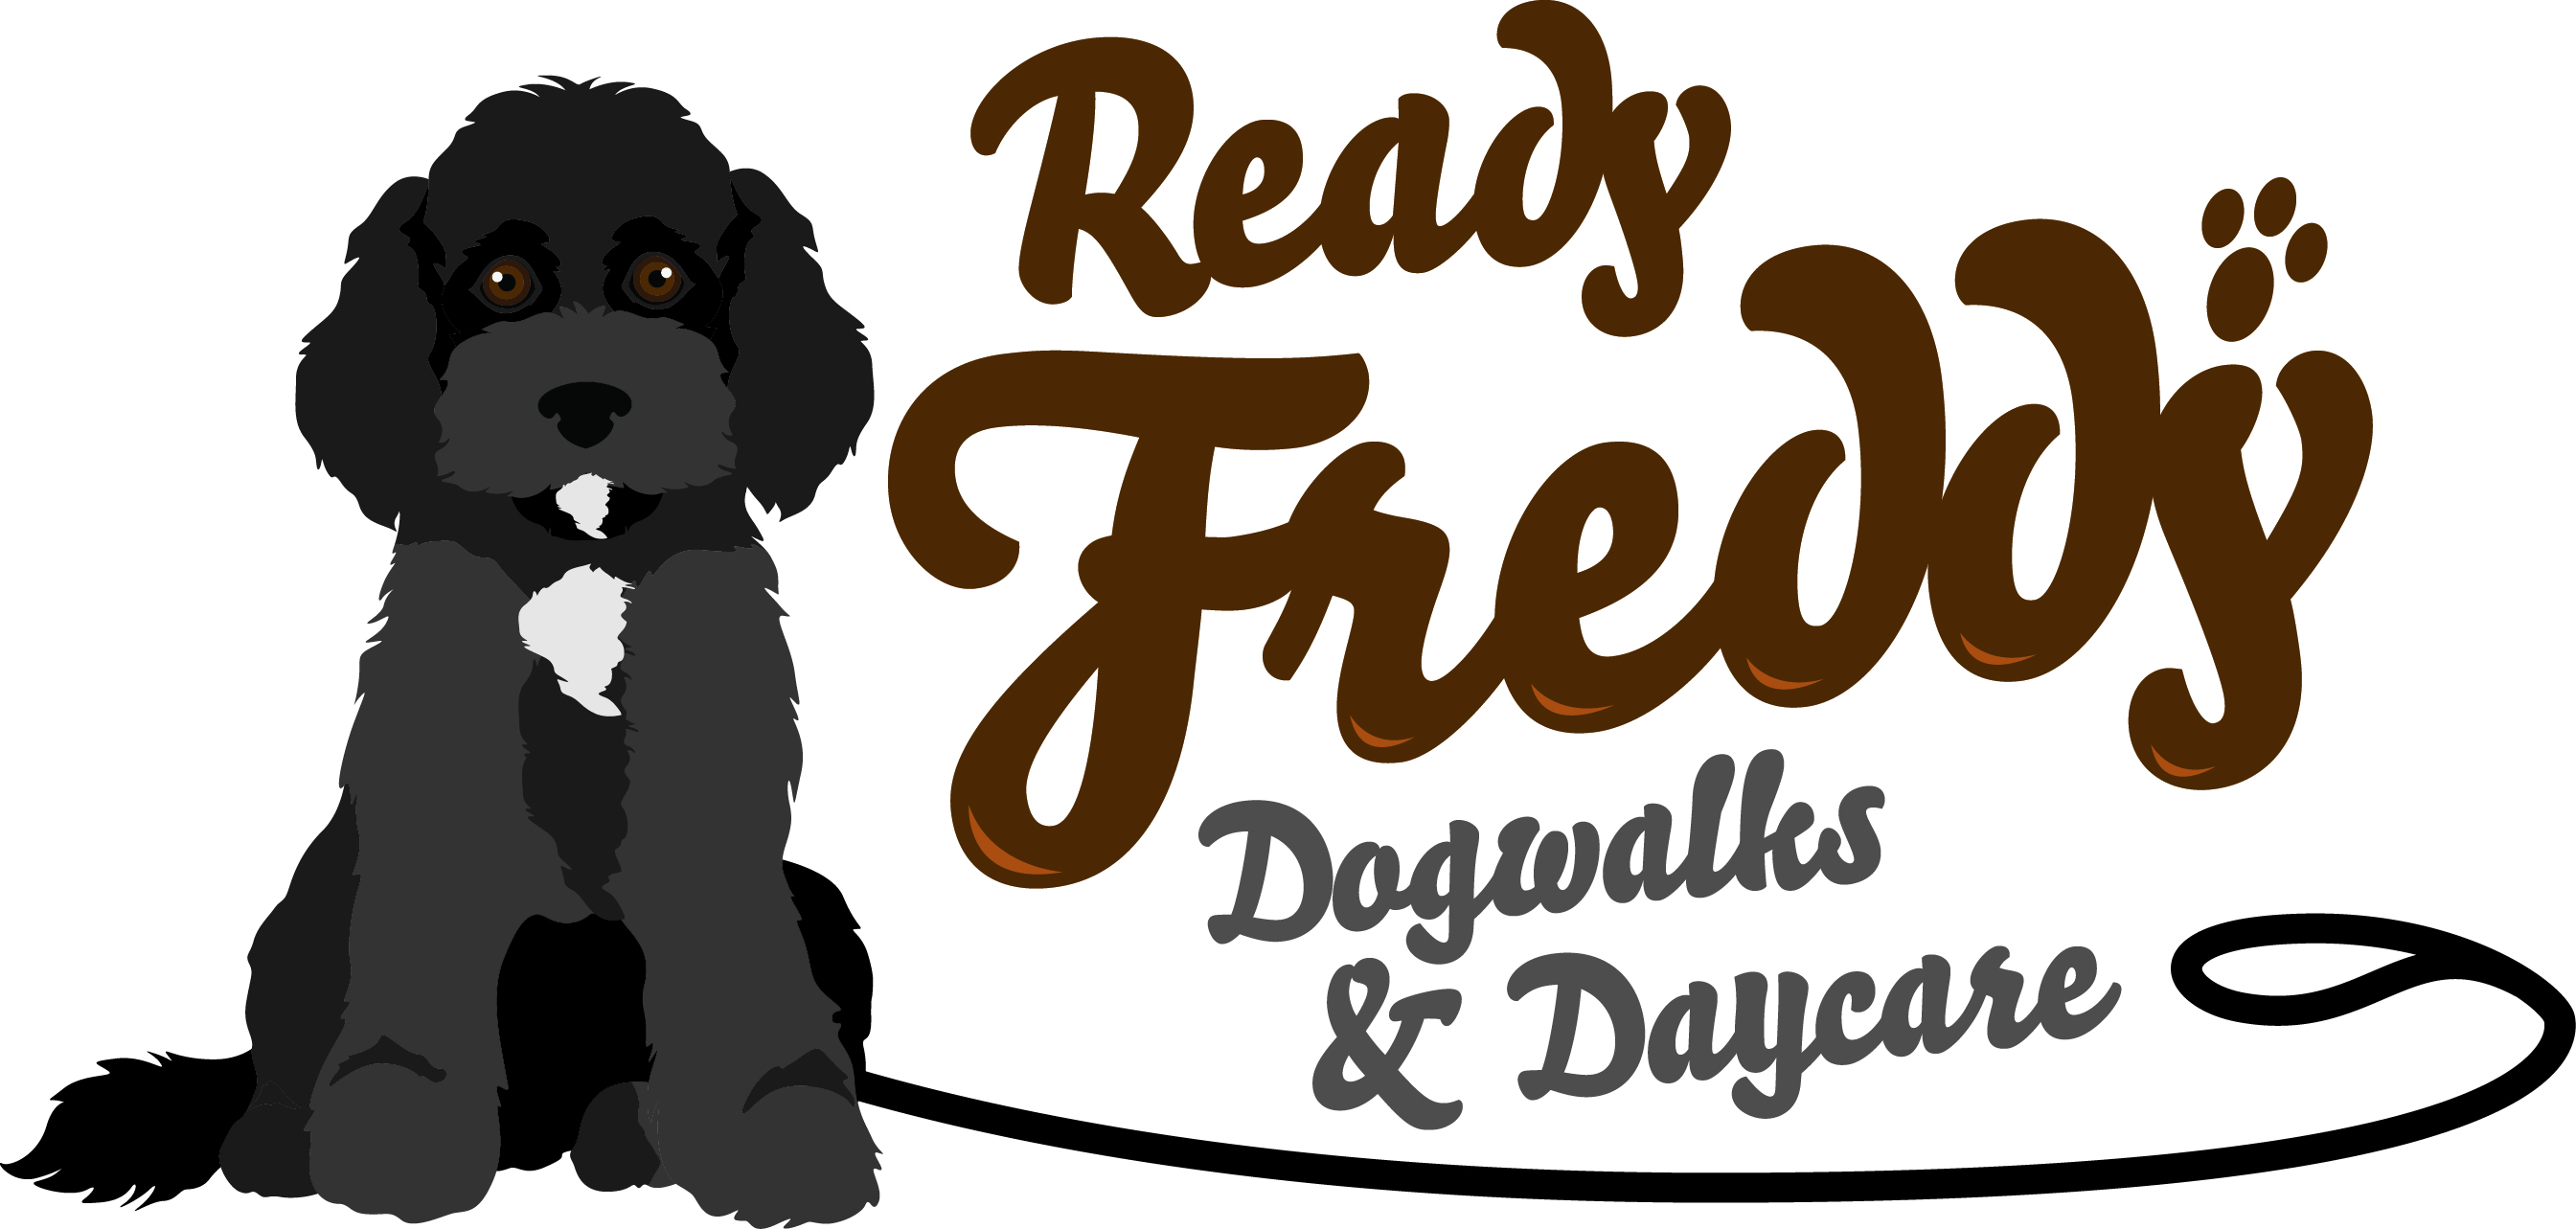 Ready Freddy Dog Walks